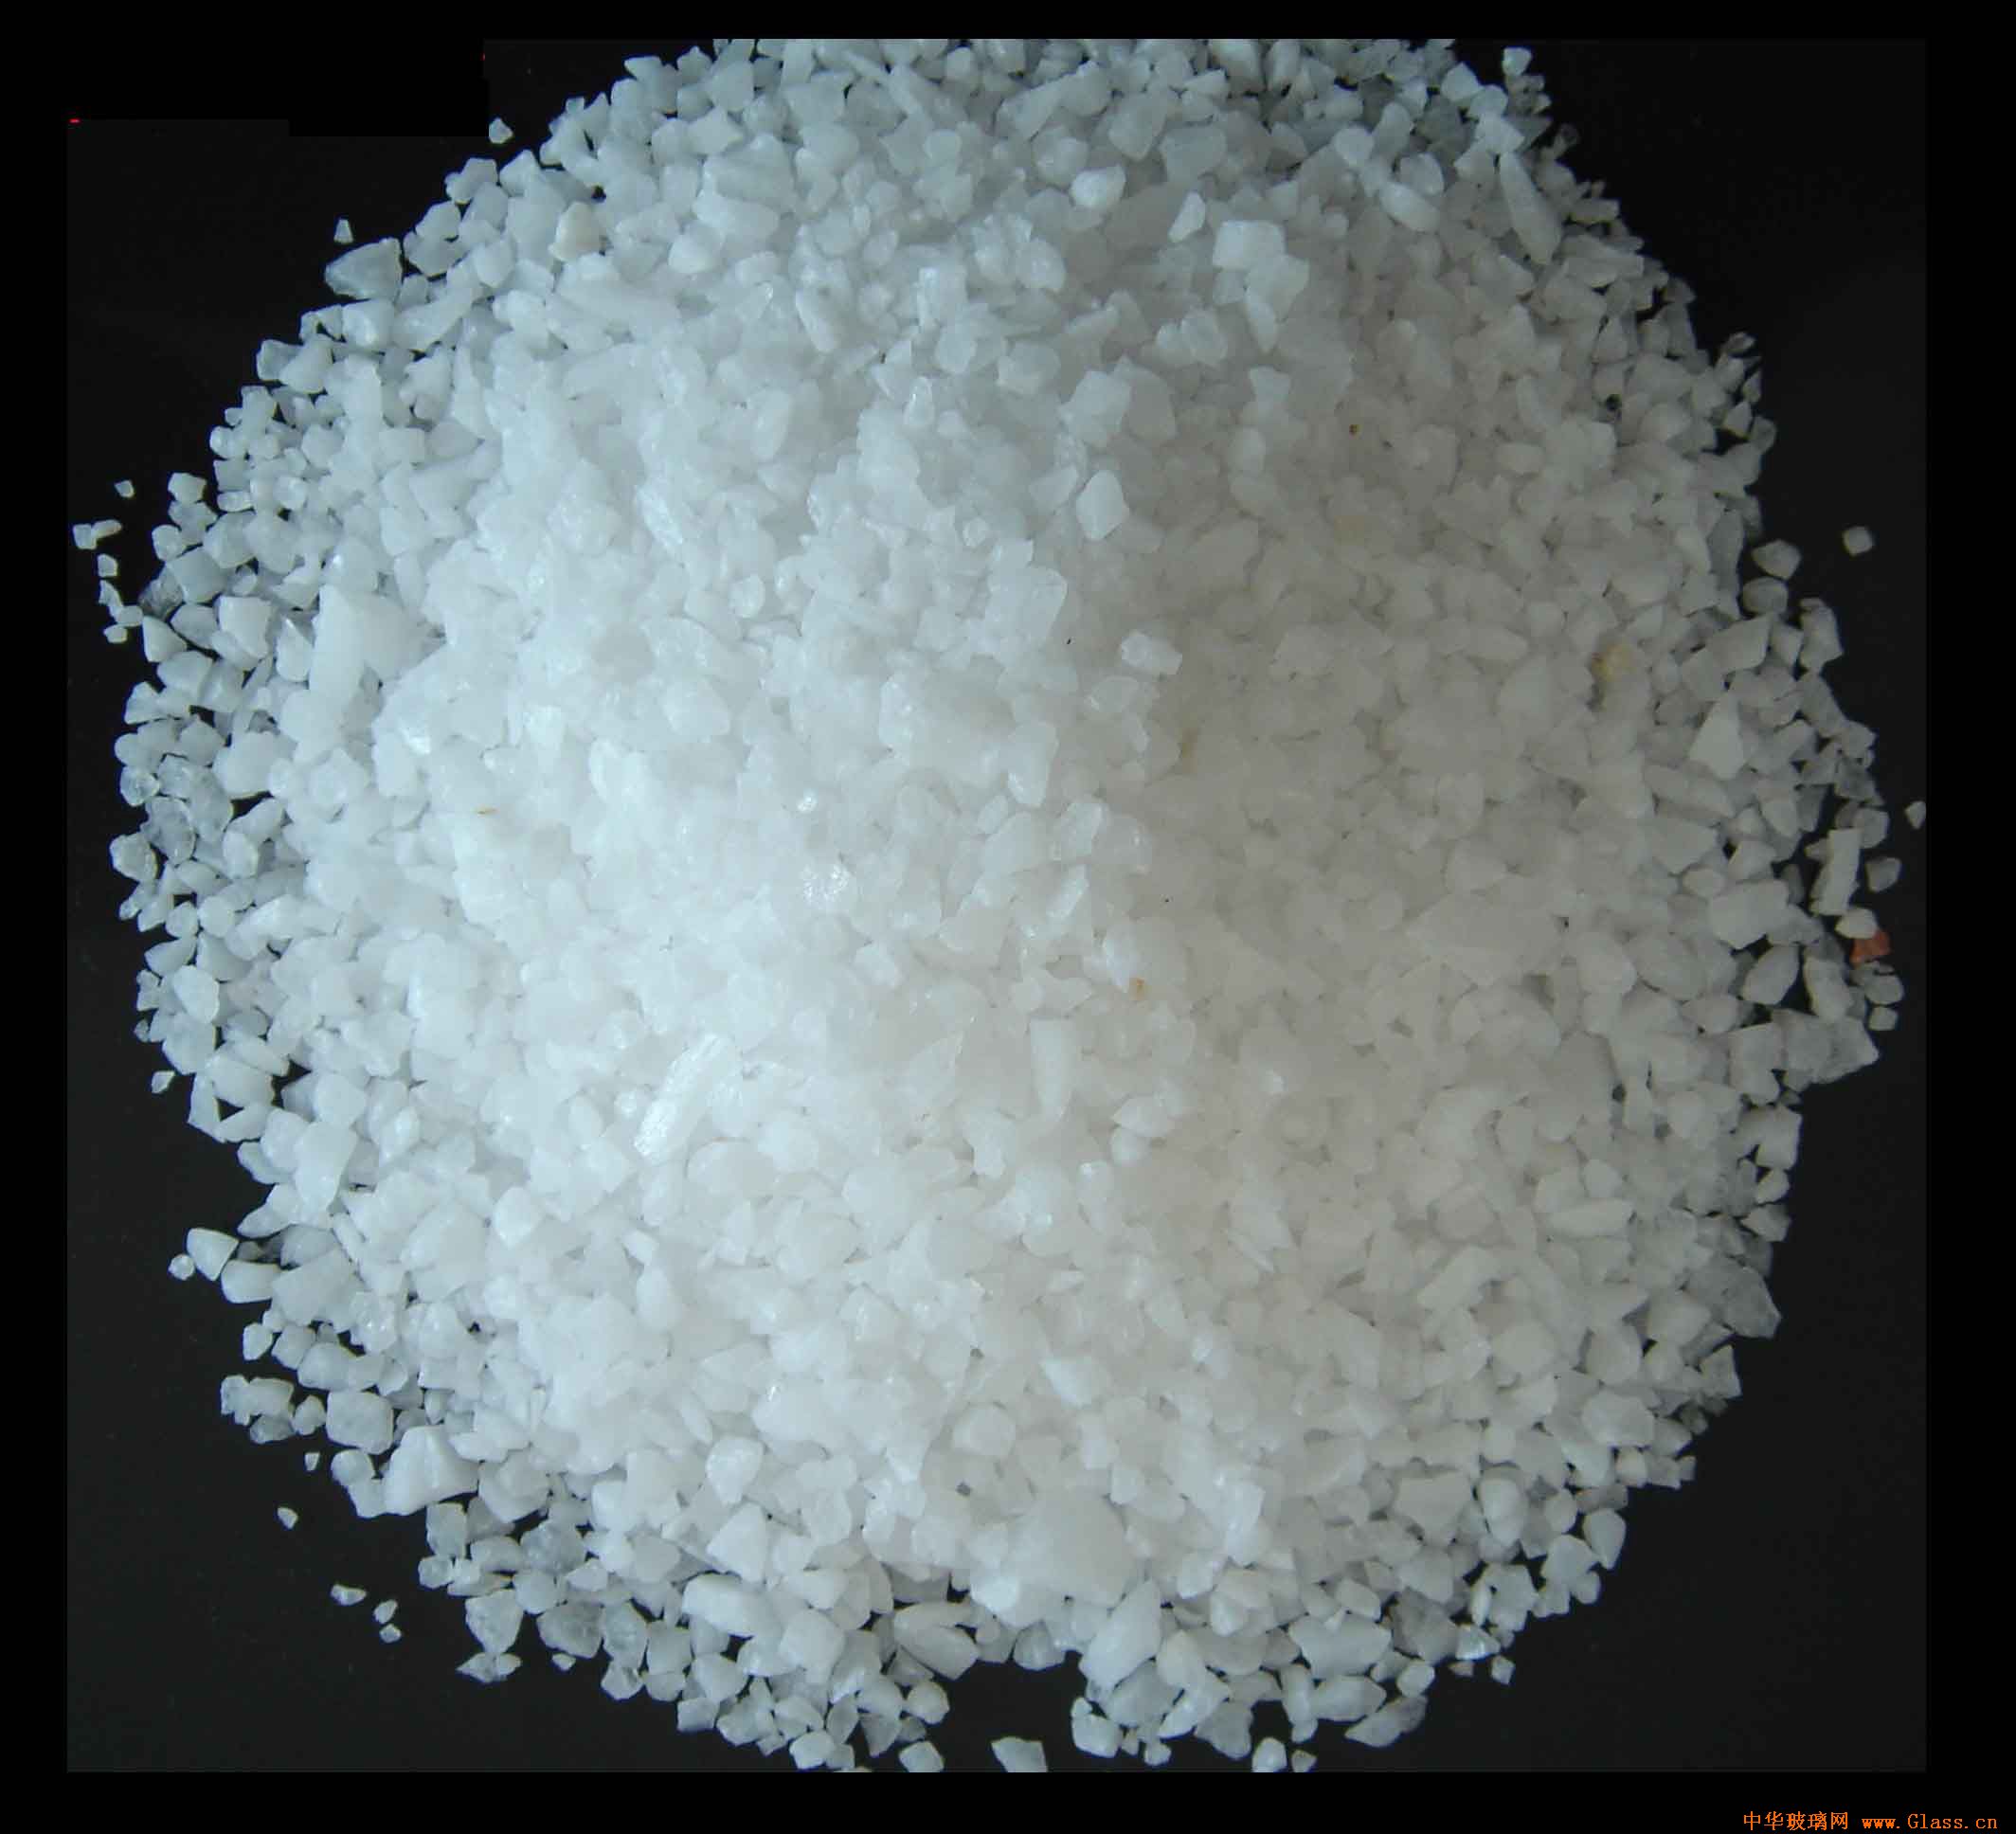 石英砂是石英石经破碎加工而成的石英颗粒，石英石是一种非金属矿物质，是一种坚硬、耐磨、化学性能稳定的硅酸盐矿物，其主要矿物成分是SiO2。